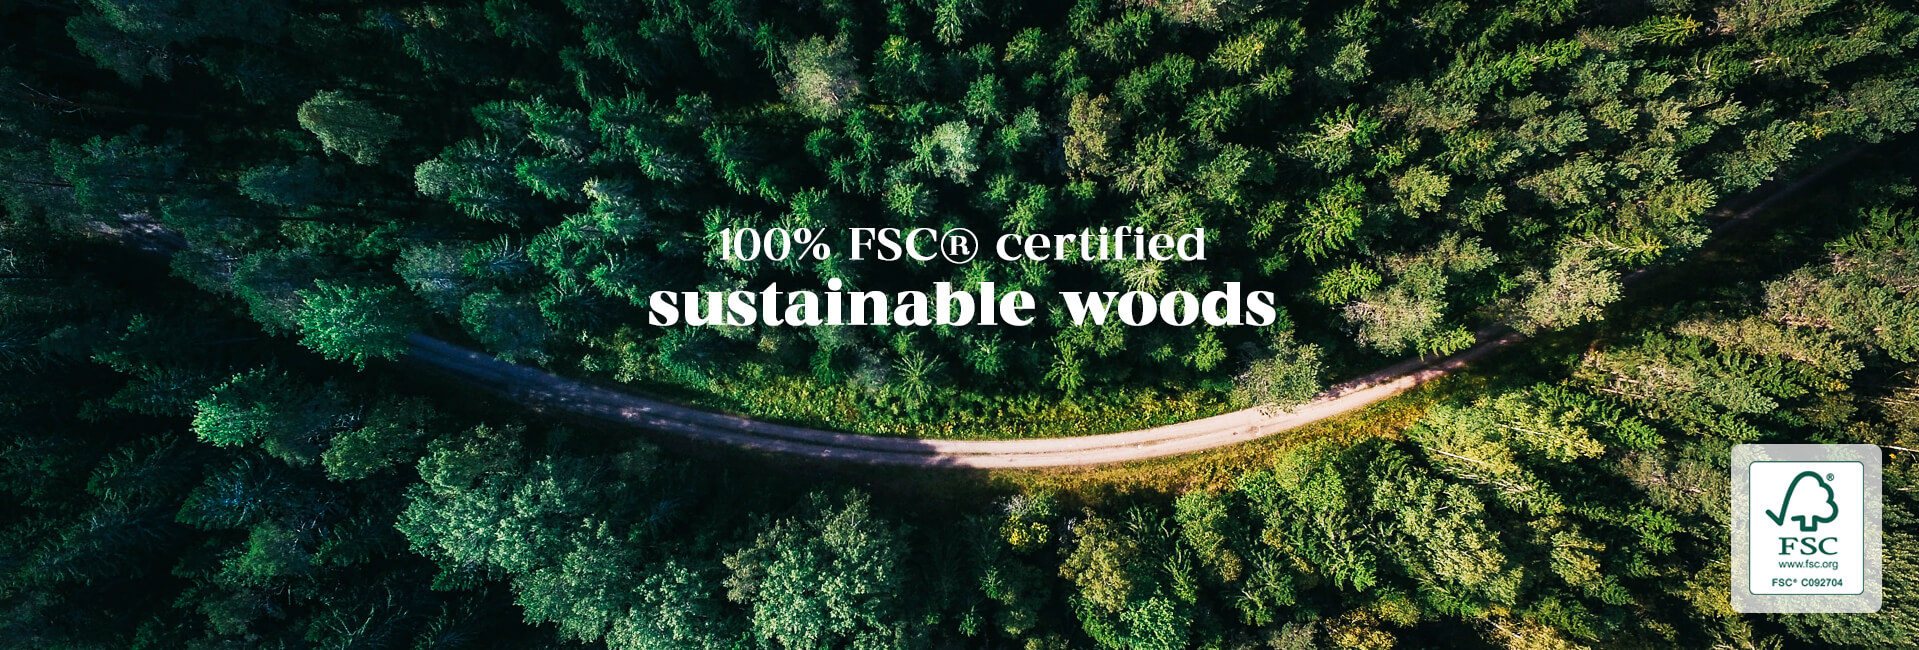 100% fsc certified woods